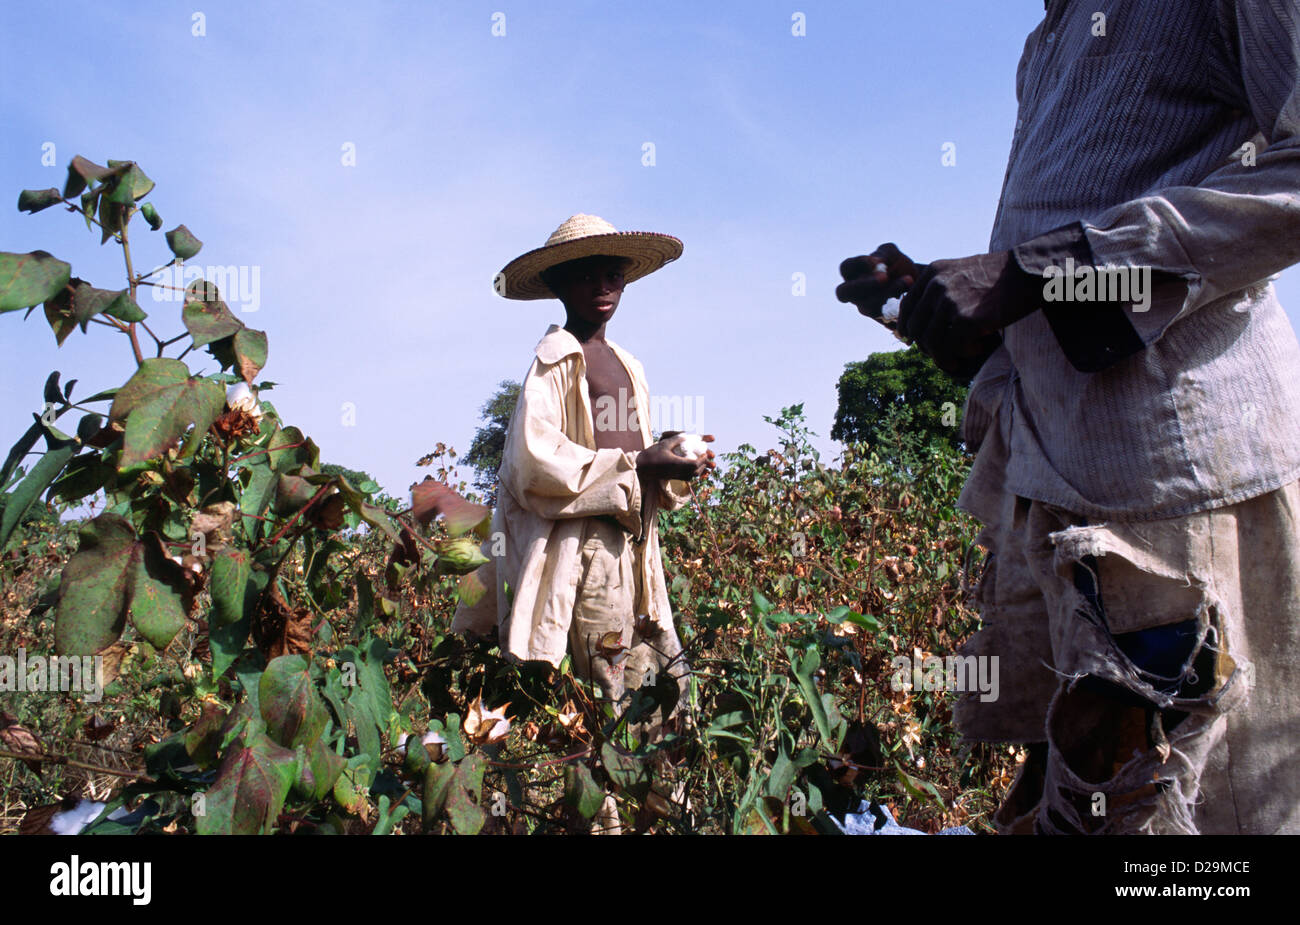 Un jeune garçon travaille au Mali, Afrique de l'Ouest, au cours de la récolte de coton - l'une des principales exportations du pays. Banque D'Images